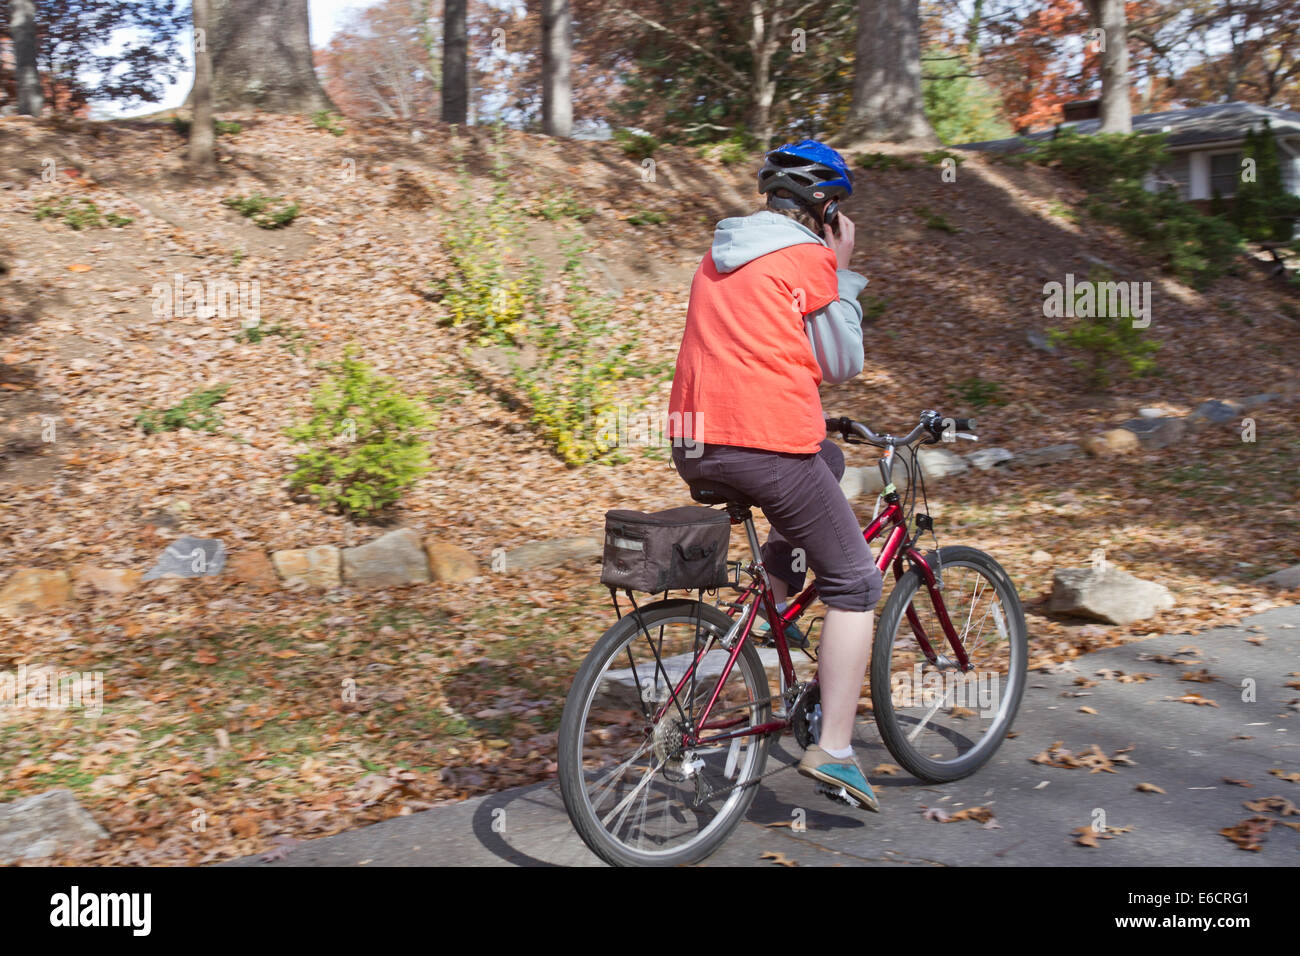 Mujer joven hablando por un teléfono celular mientras viajaba en una bicicleta y no prestar atención al hermoso paisaje otoñal a su alrededor. Foto de stock